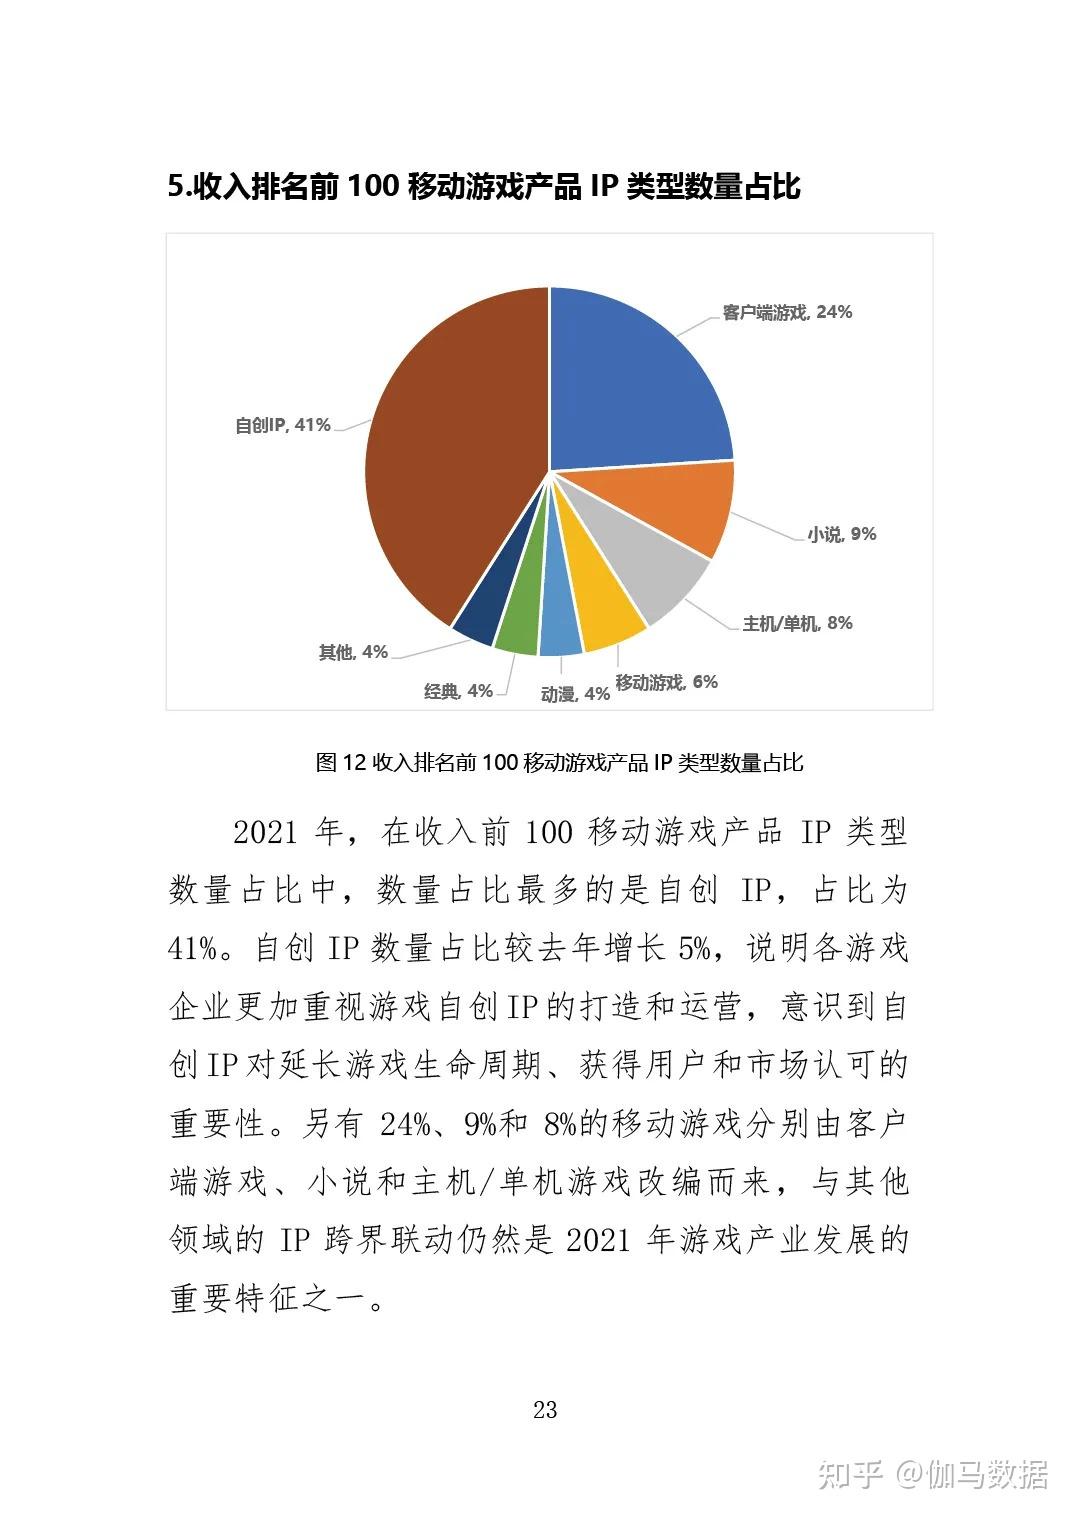 2022年上半年中国游戏产业报告 游戏市场收入1477亿元_新浪游戏_手机新浪网